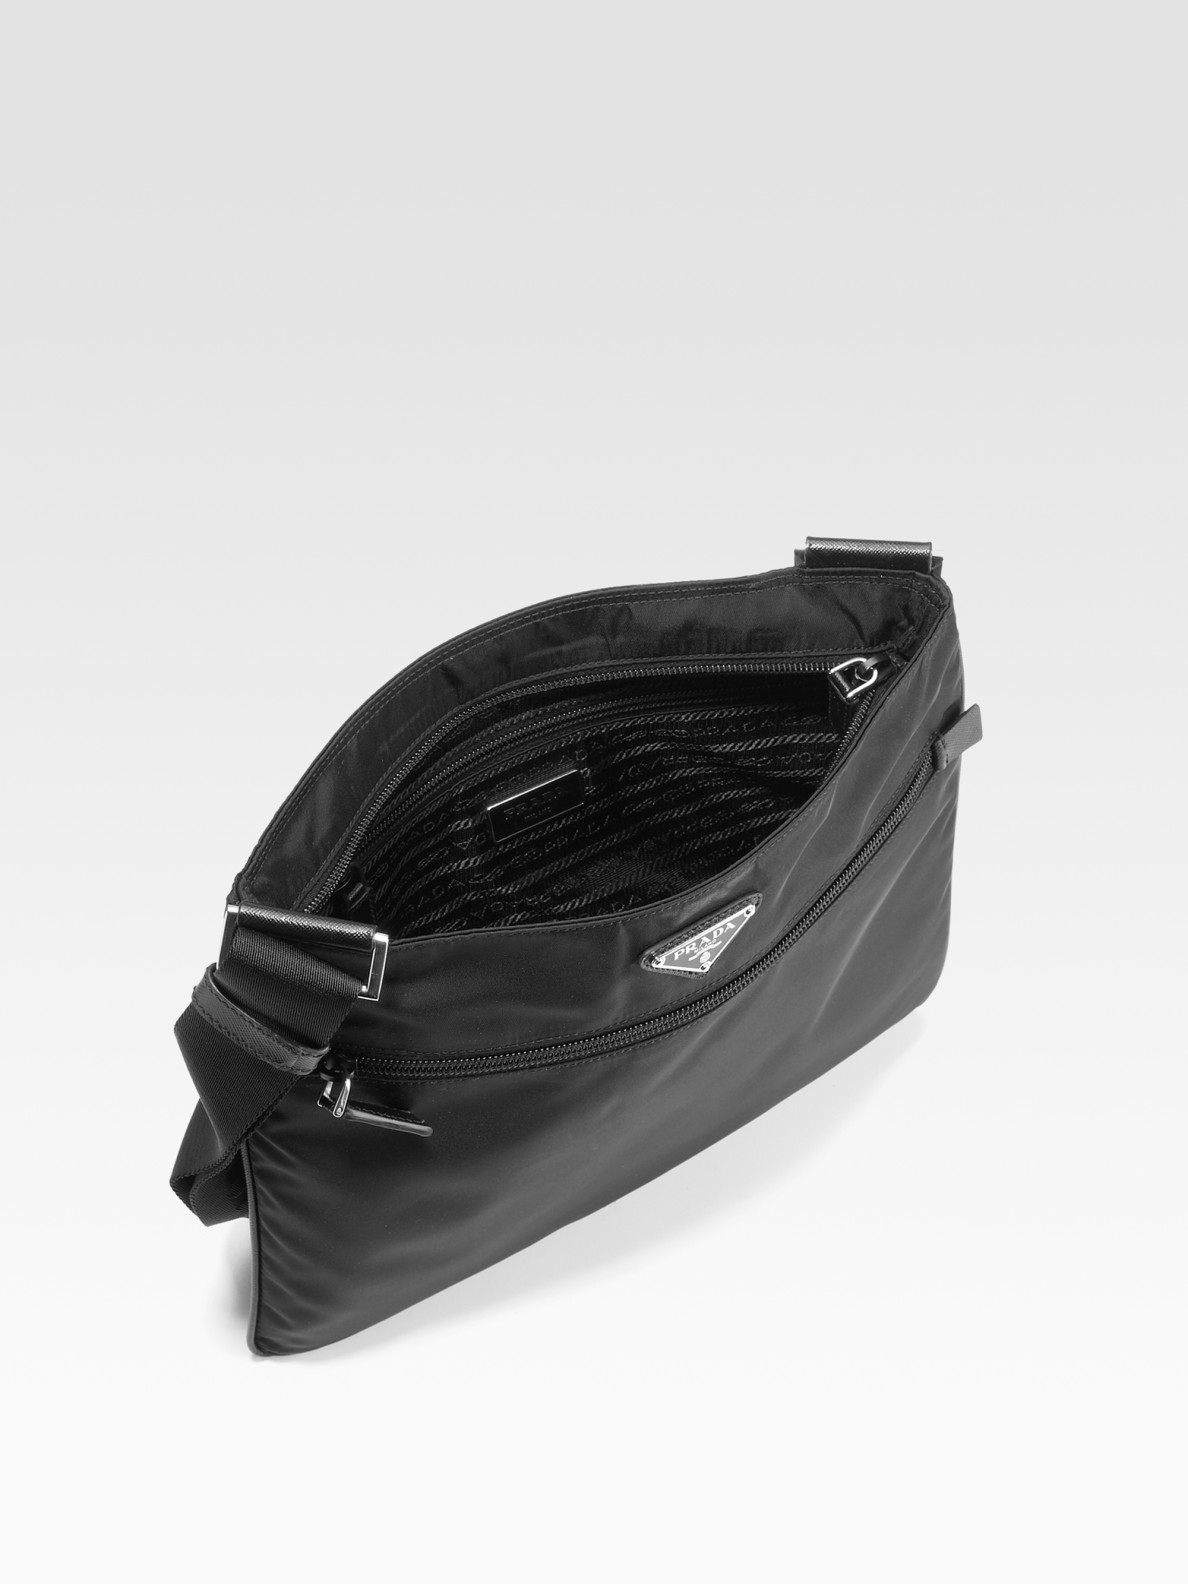 Prada Nylon \u0026amp; Leather Messenger Bag in Black for Men | Lyst  